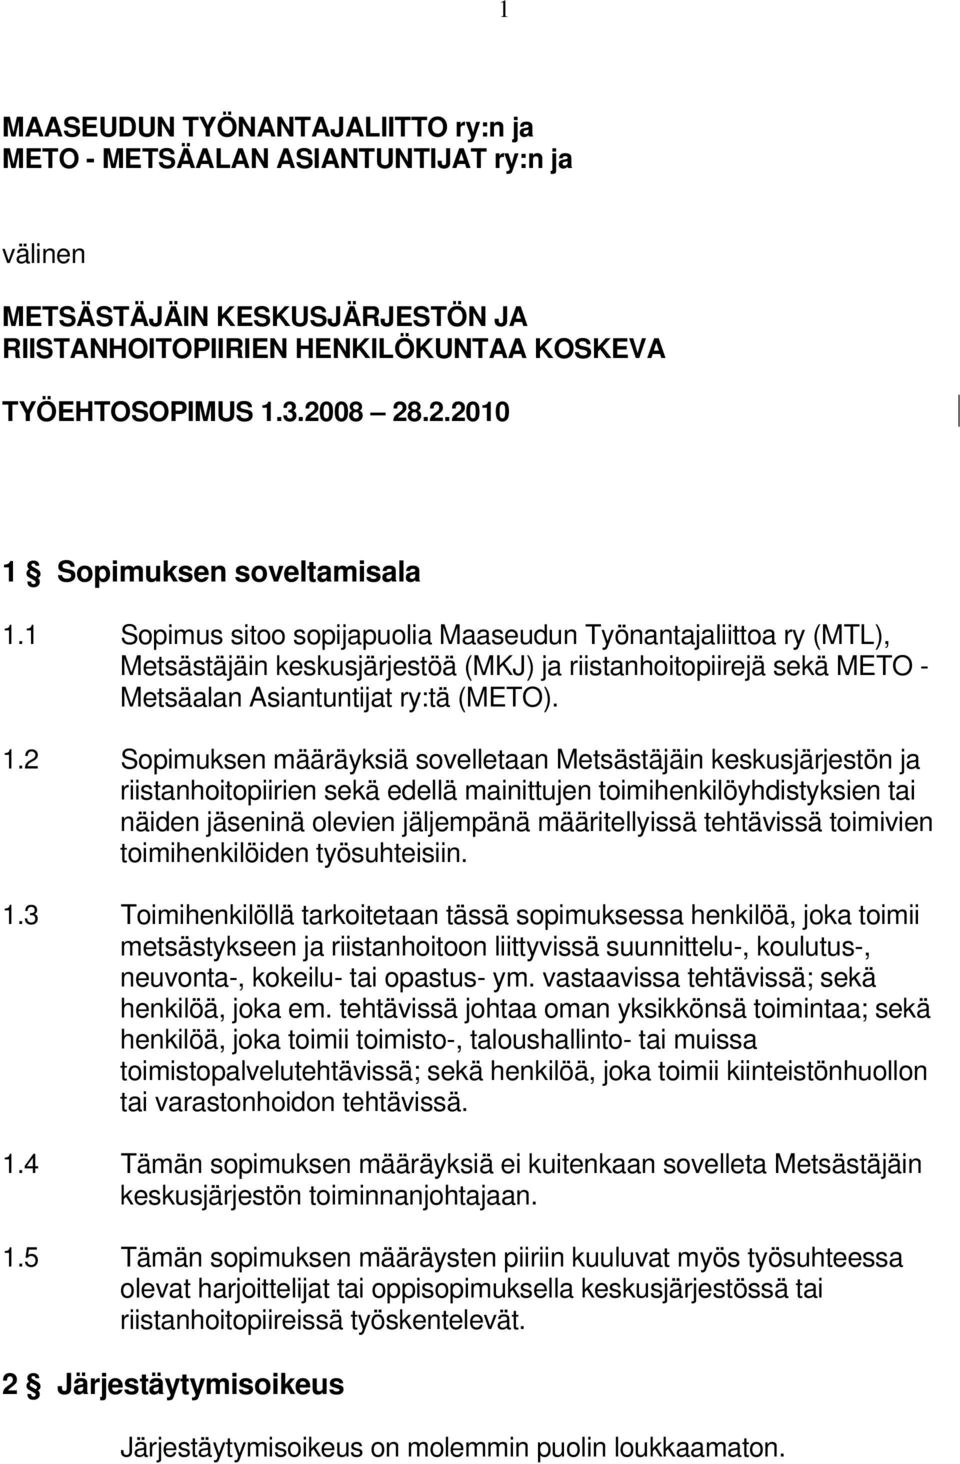 1 Sopimus sitoo sopijapuolia Maaseudun Työnantajaliittoa ry (MTL), Metsästäjäin keskusjärjestöä (MKJ) ja riistanhoitopiirejä sekä METO - Metsäalan Asiantuntijat ry:tä (METO). 1.